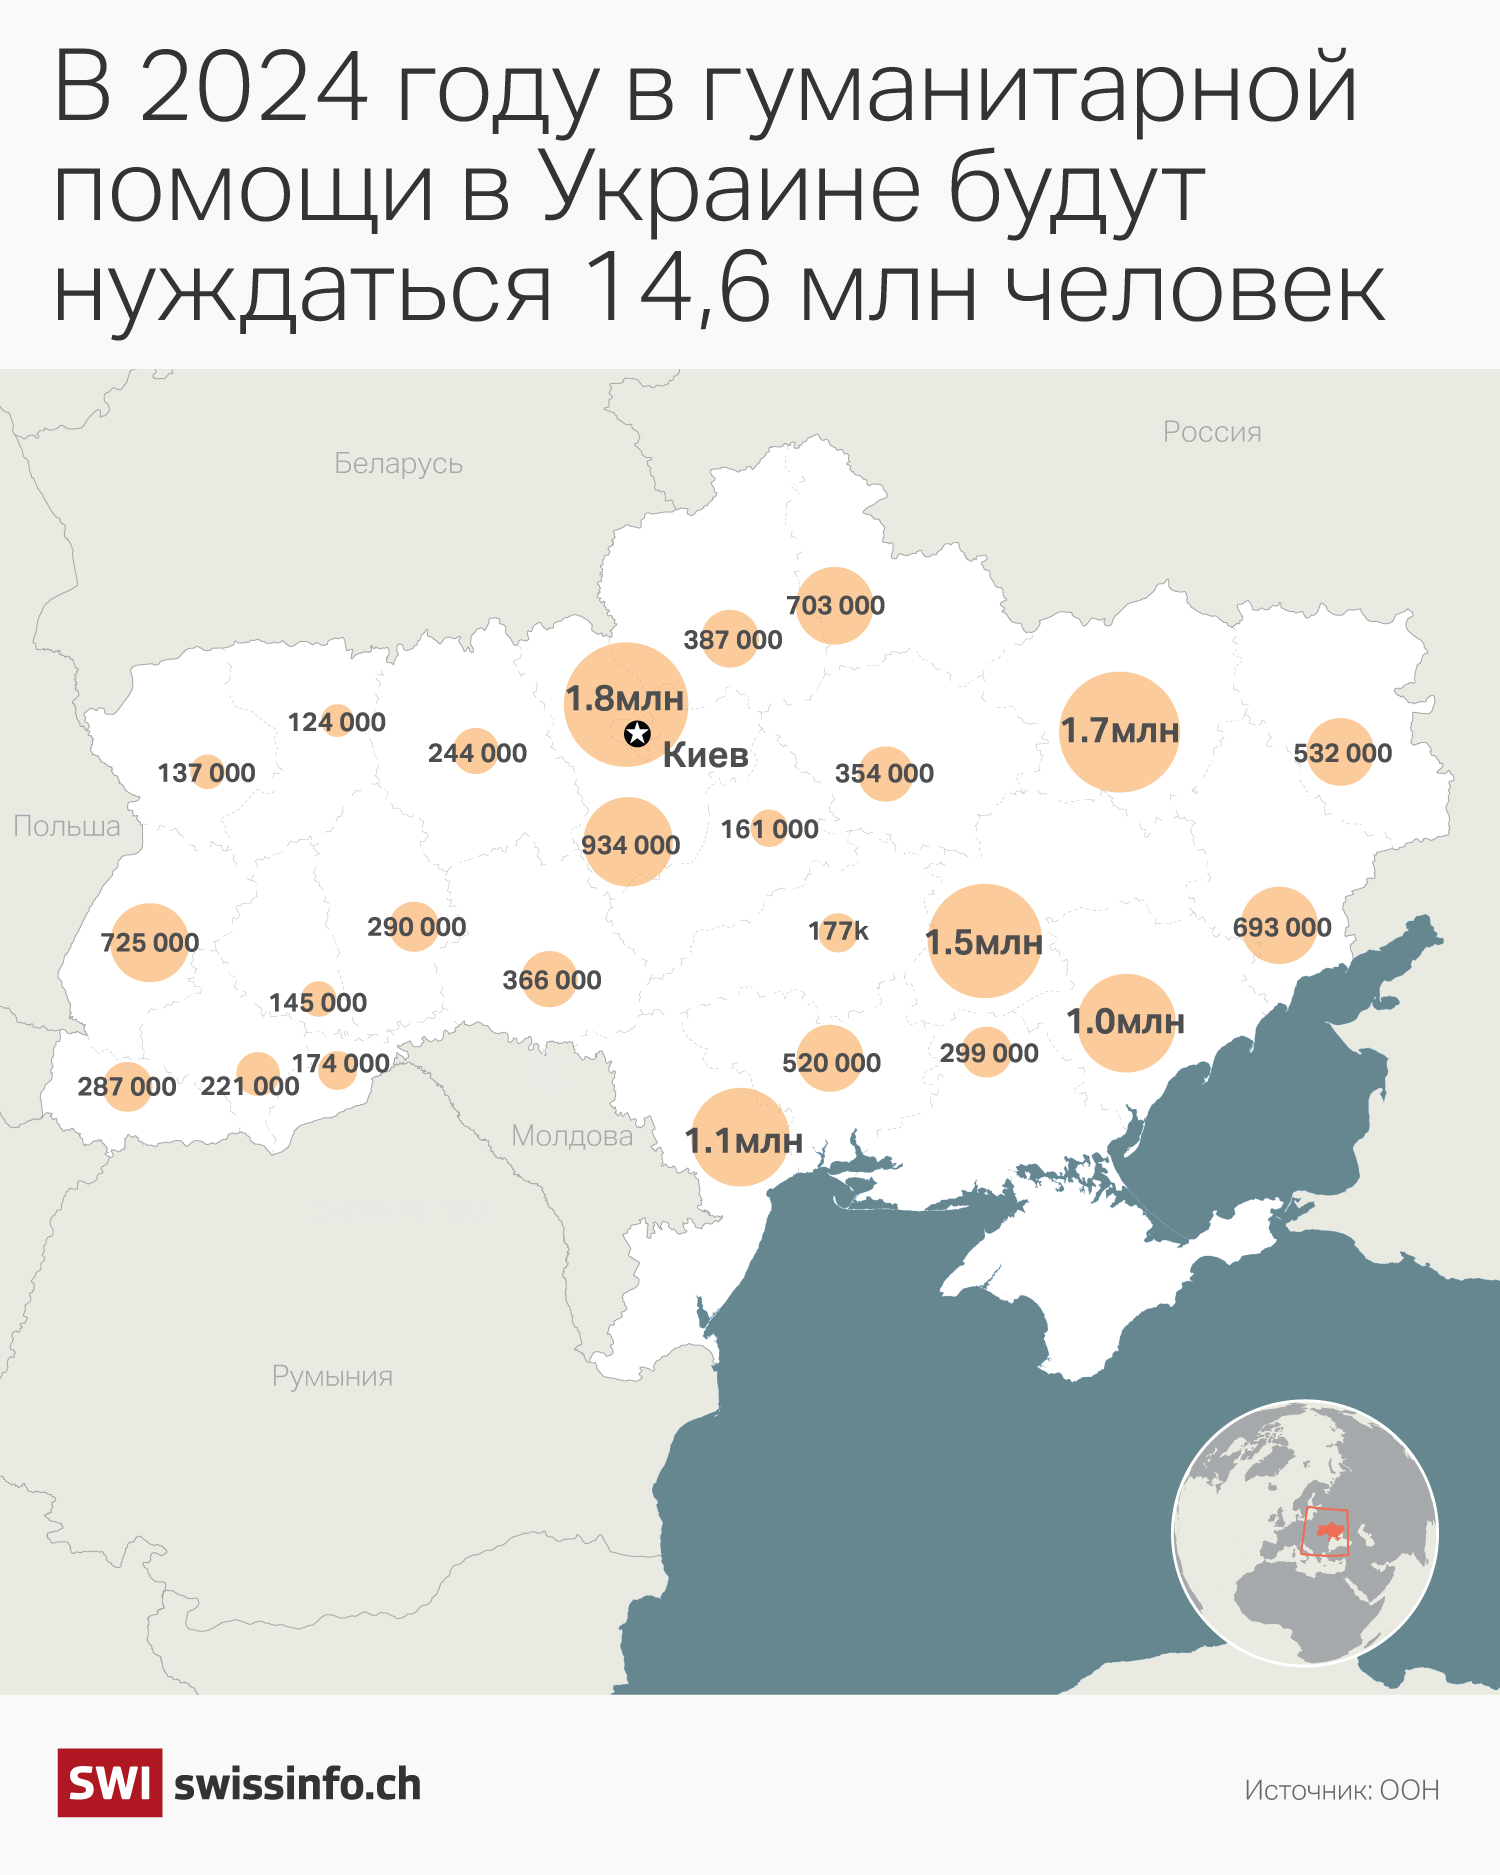 Гуманитарные потребности Украины по регионам страны.